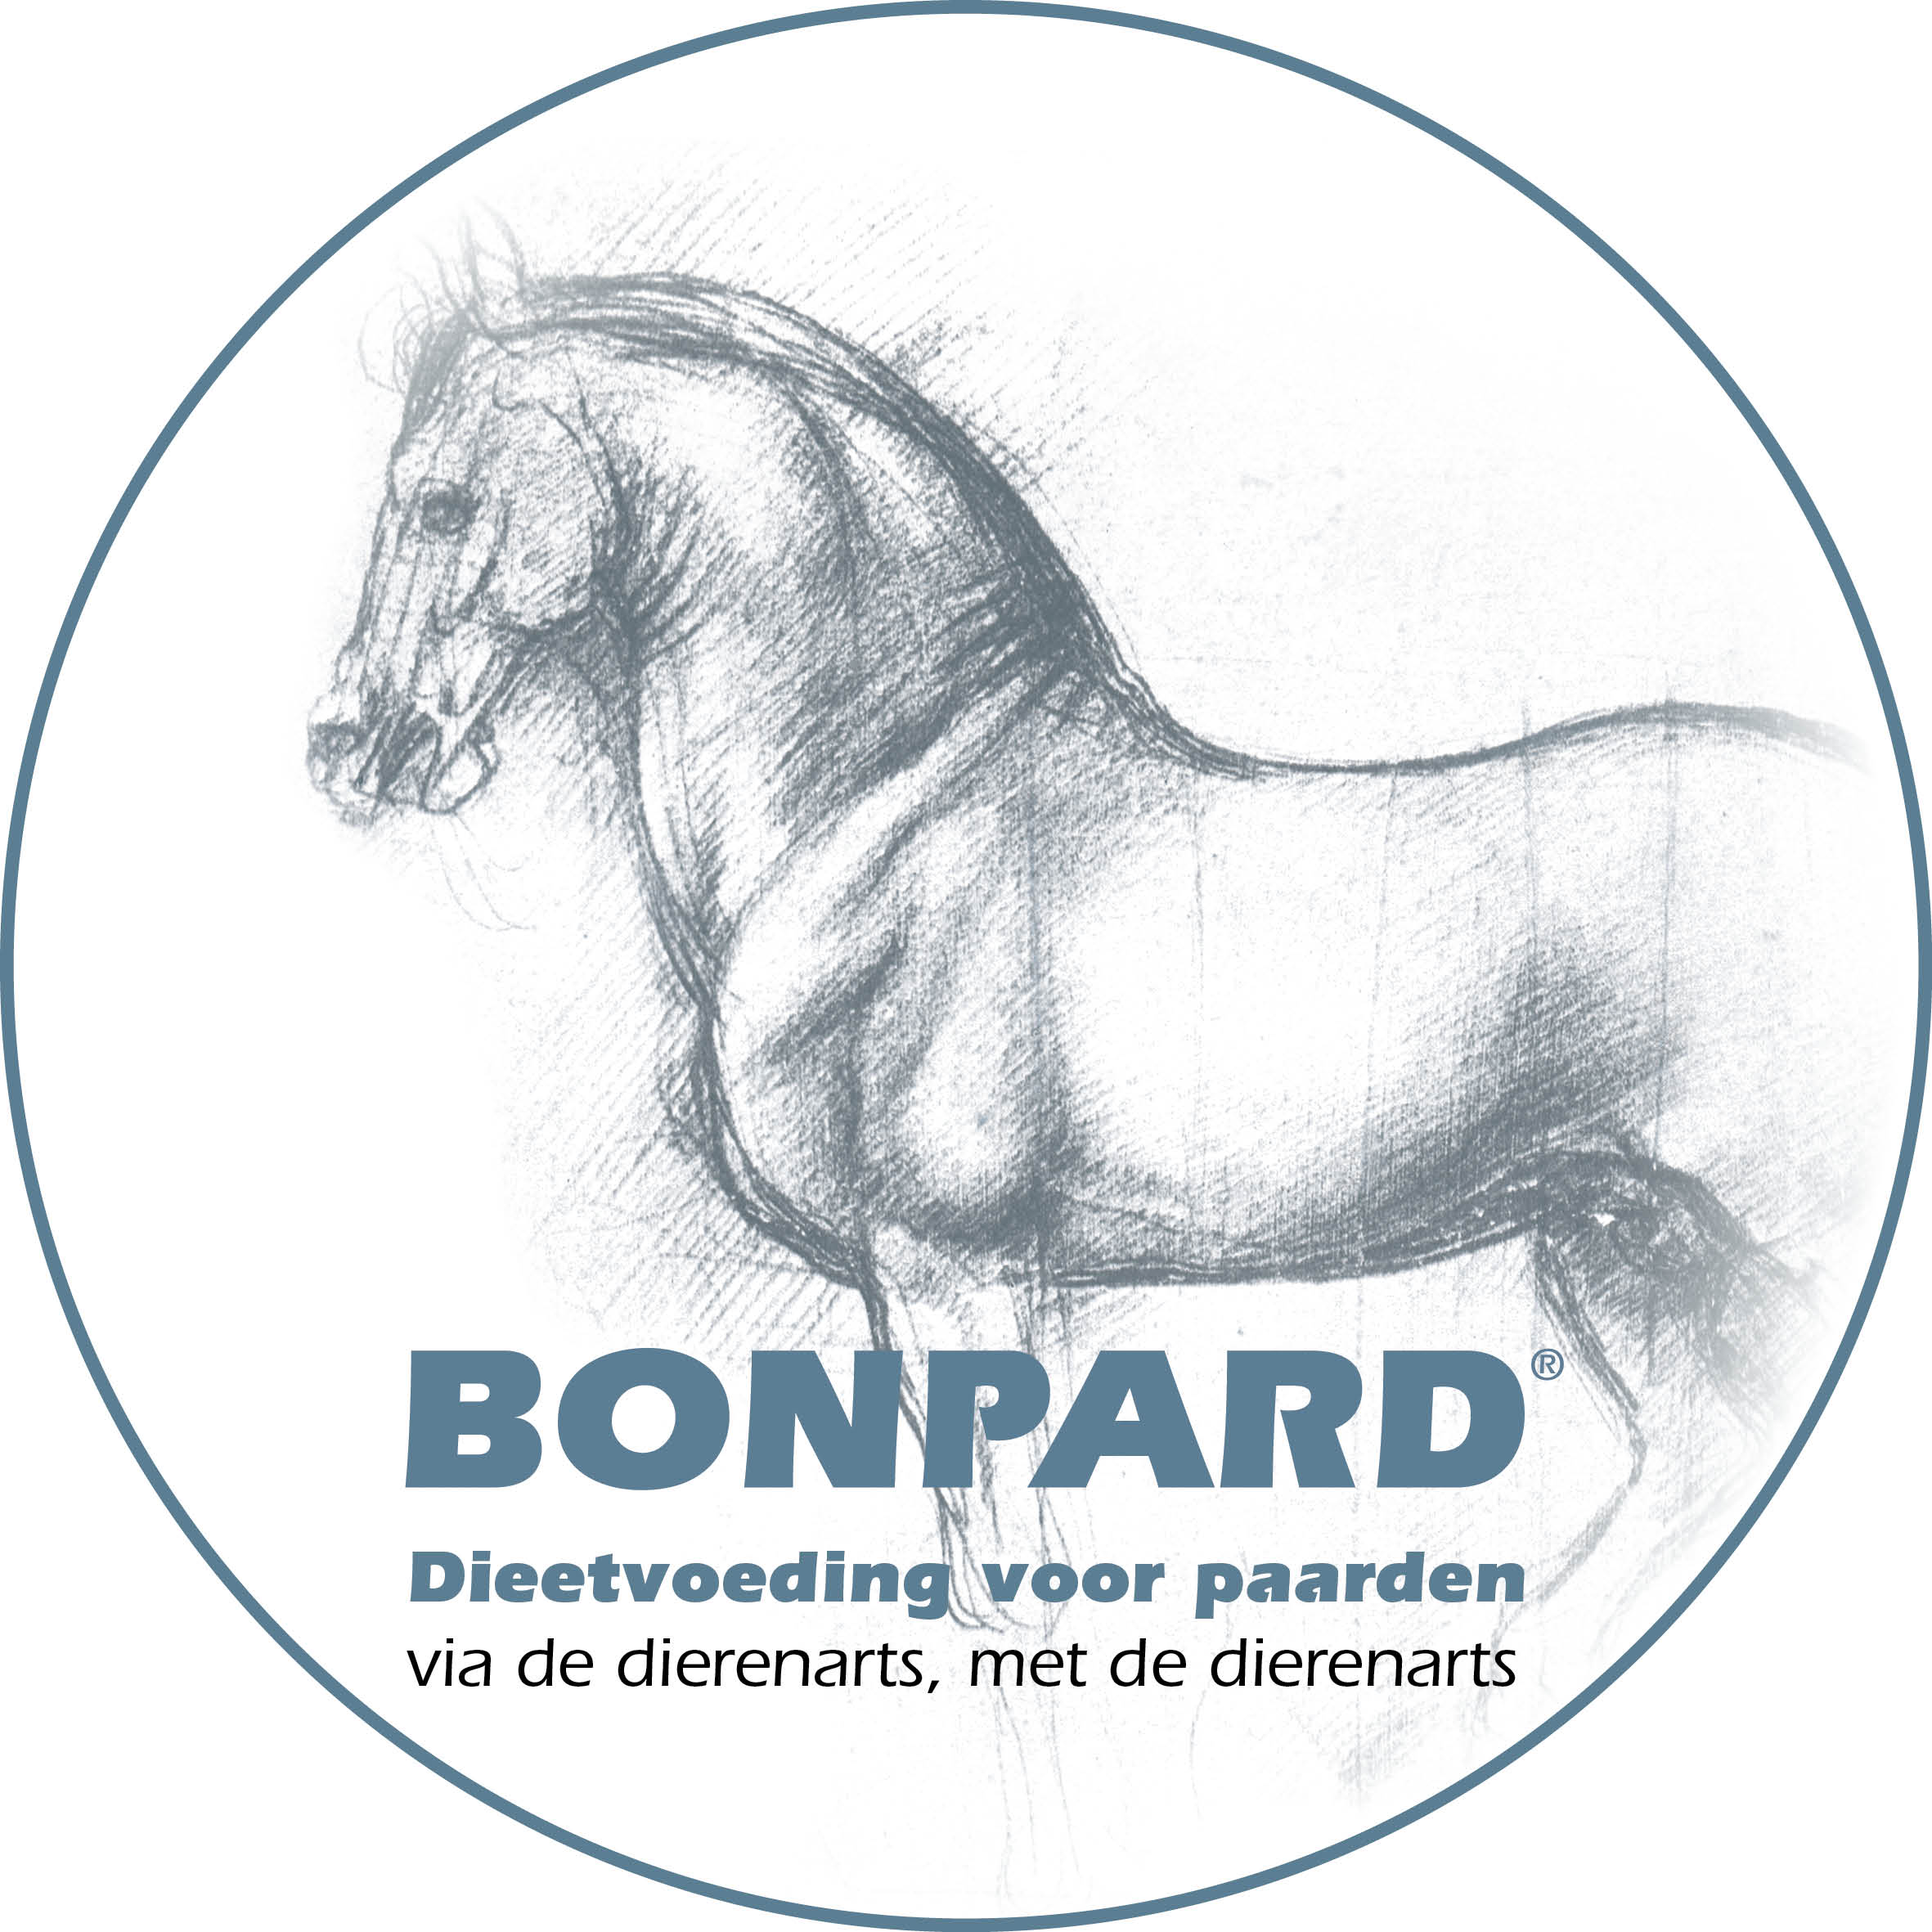 Bonpard dieetvoeding voor paarden: via de dierenarts, met de dierenarts